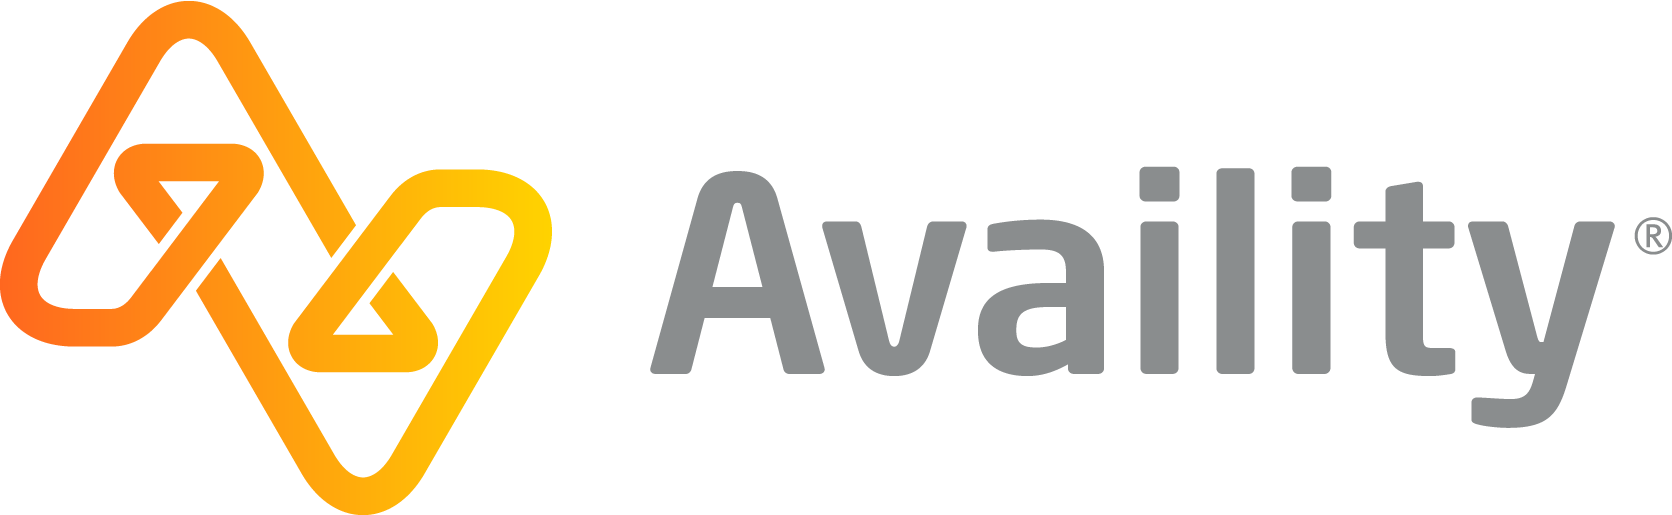 Availity Logo